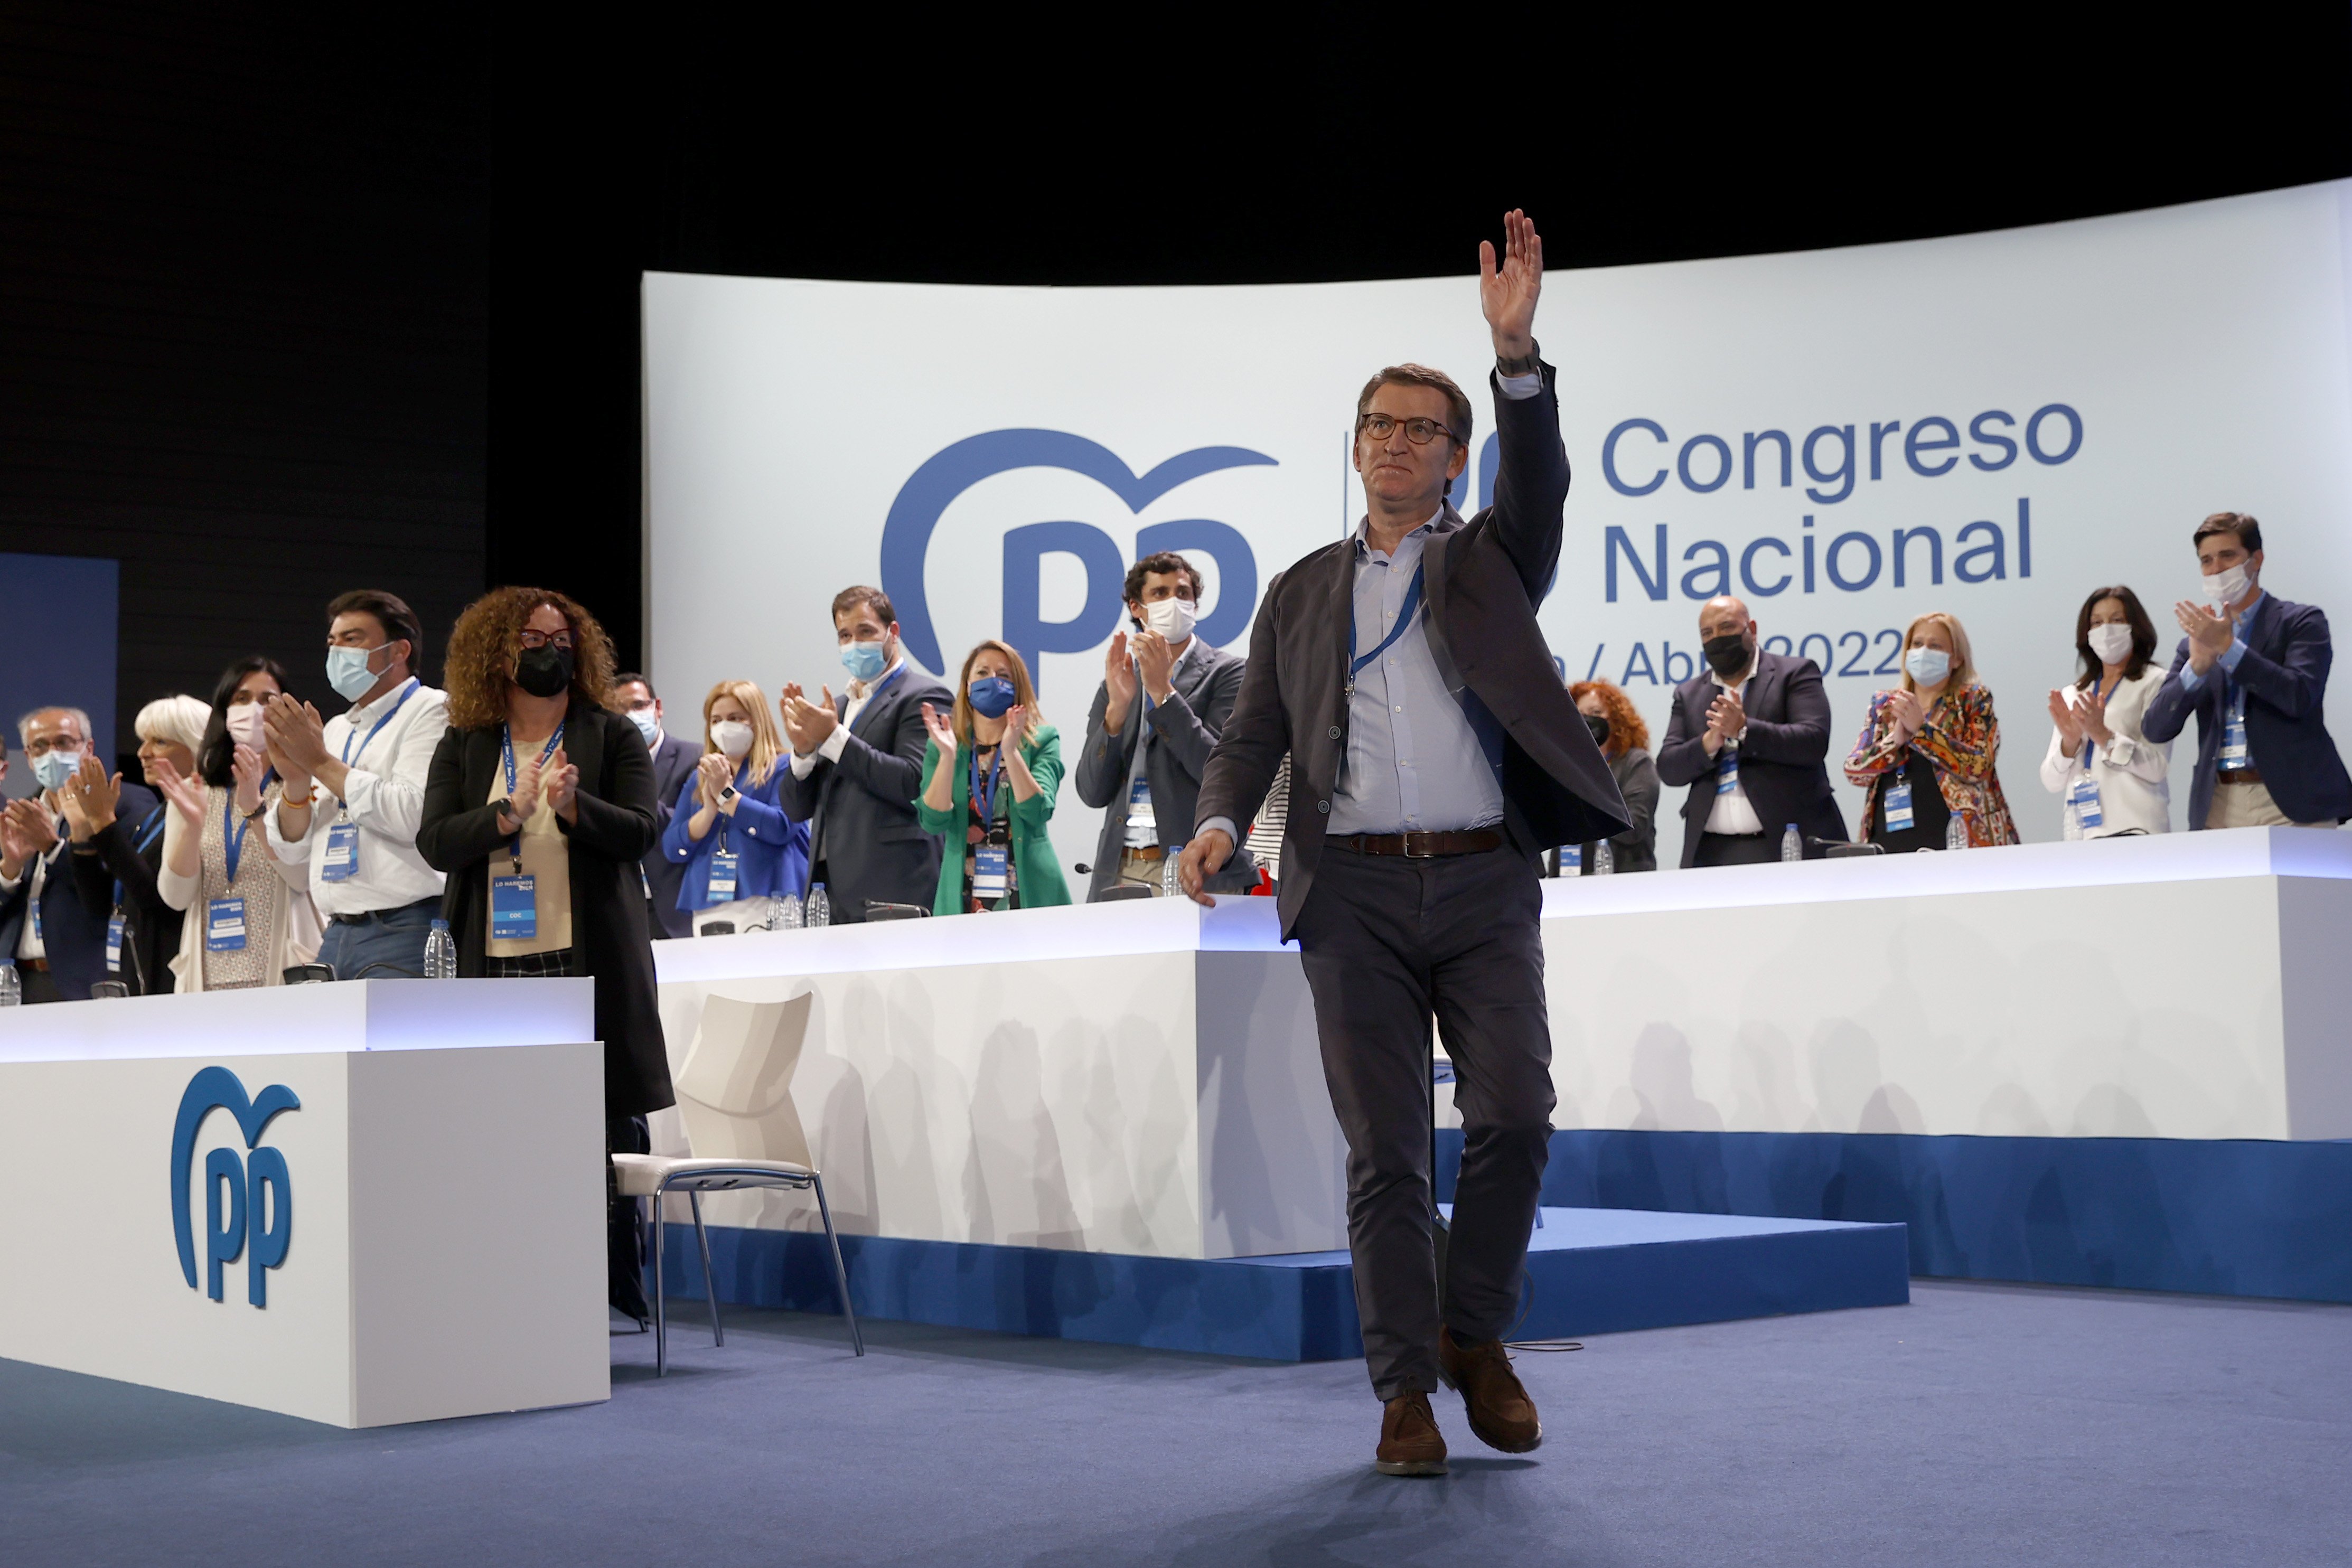 Congreso del PP | Feijóo: "Somos el partido del bilingüismo cordial"